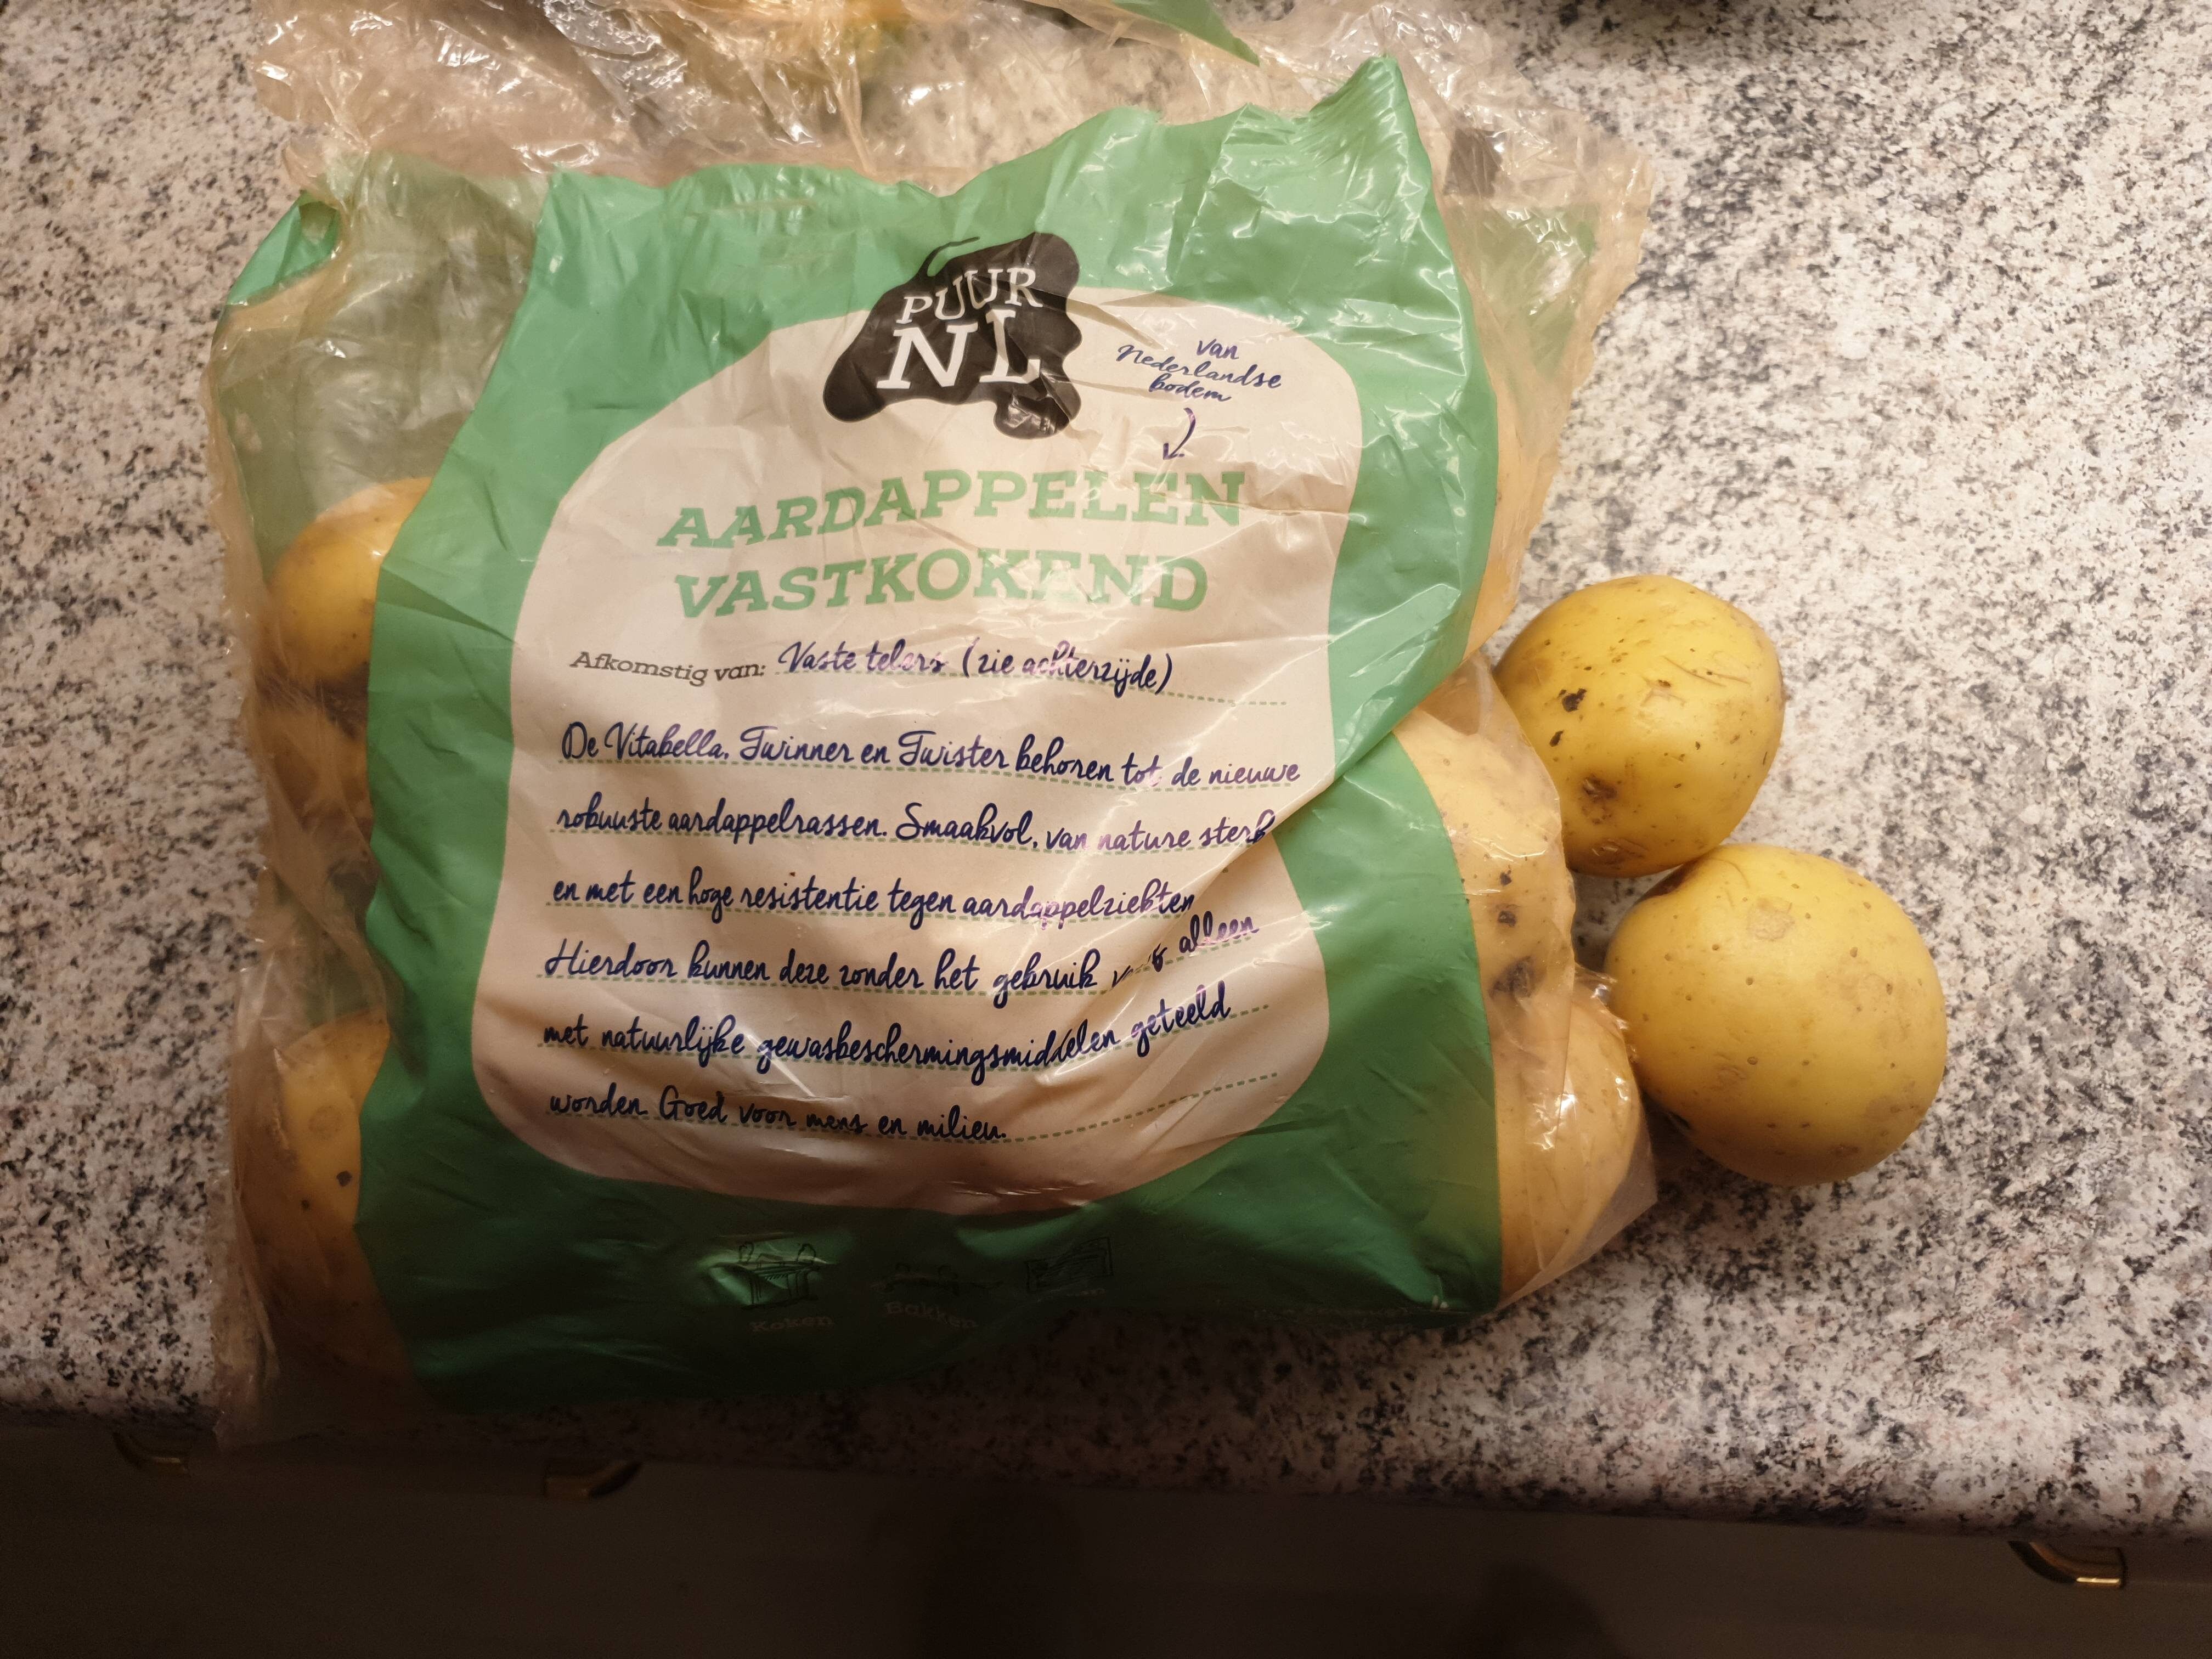 Aardappelen vastkokend - Product